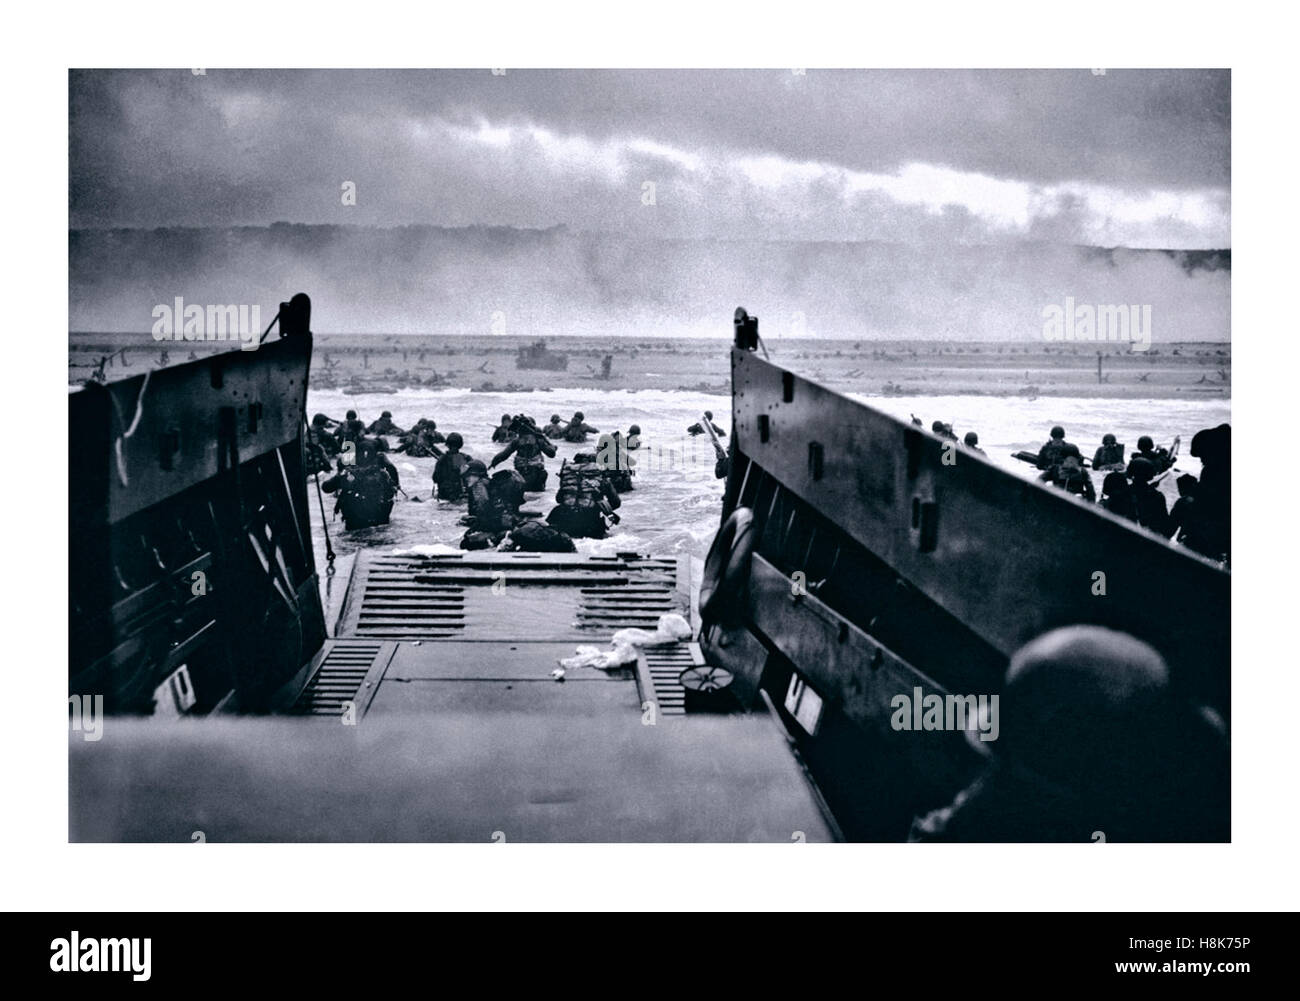 D-DAY UTAH BEACH WW2 Normandy Landungen das Landungsboot Landungsoperationen am 6. Juni 1944 (D-Day genannt) der alliierten Invasion im Nazi-Deutschland besetzte Frankreich in der Normandie Stockfoto